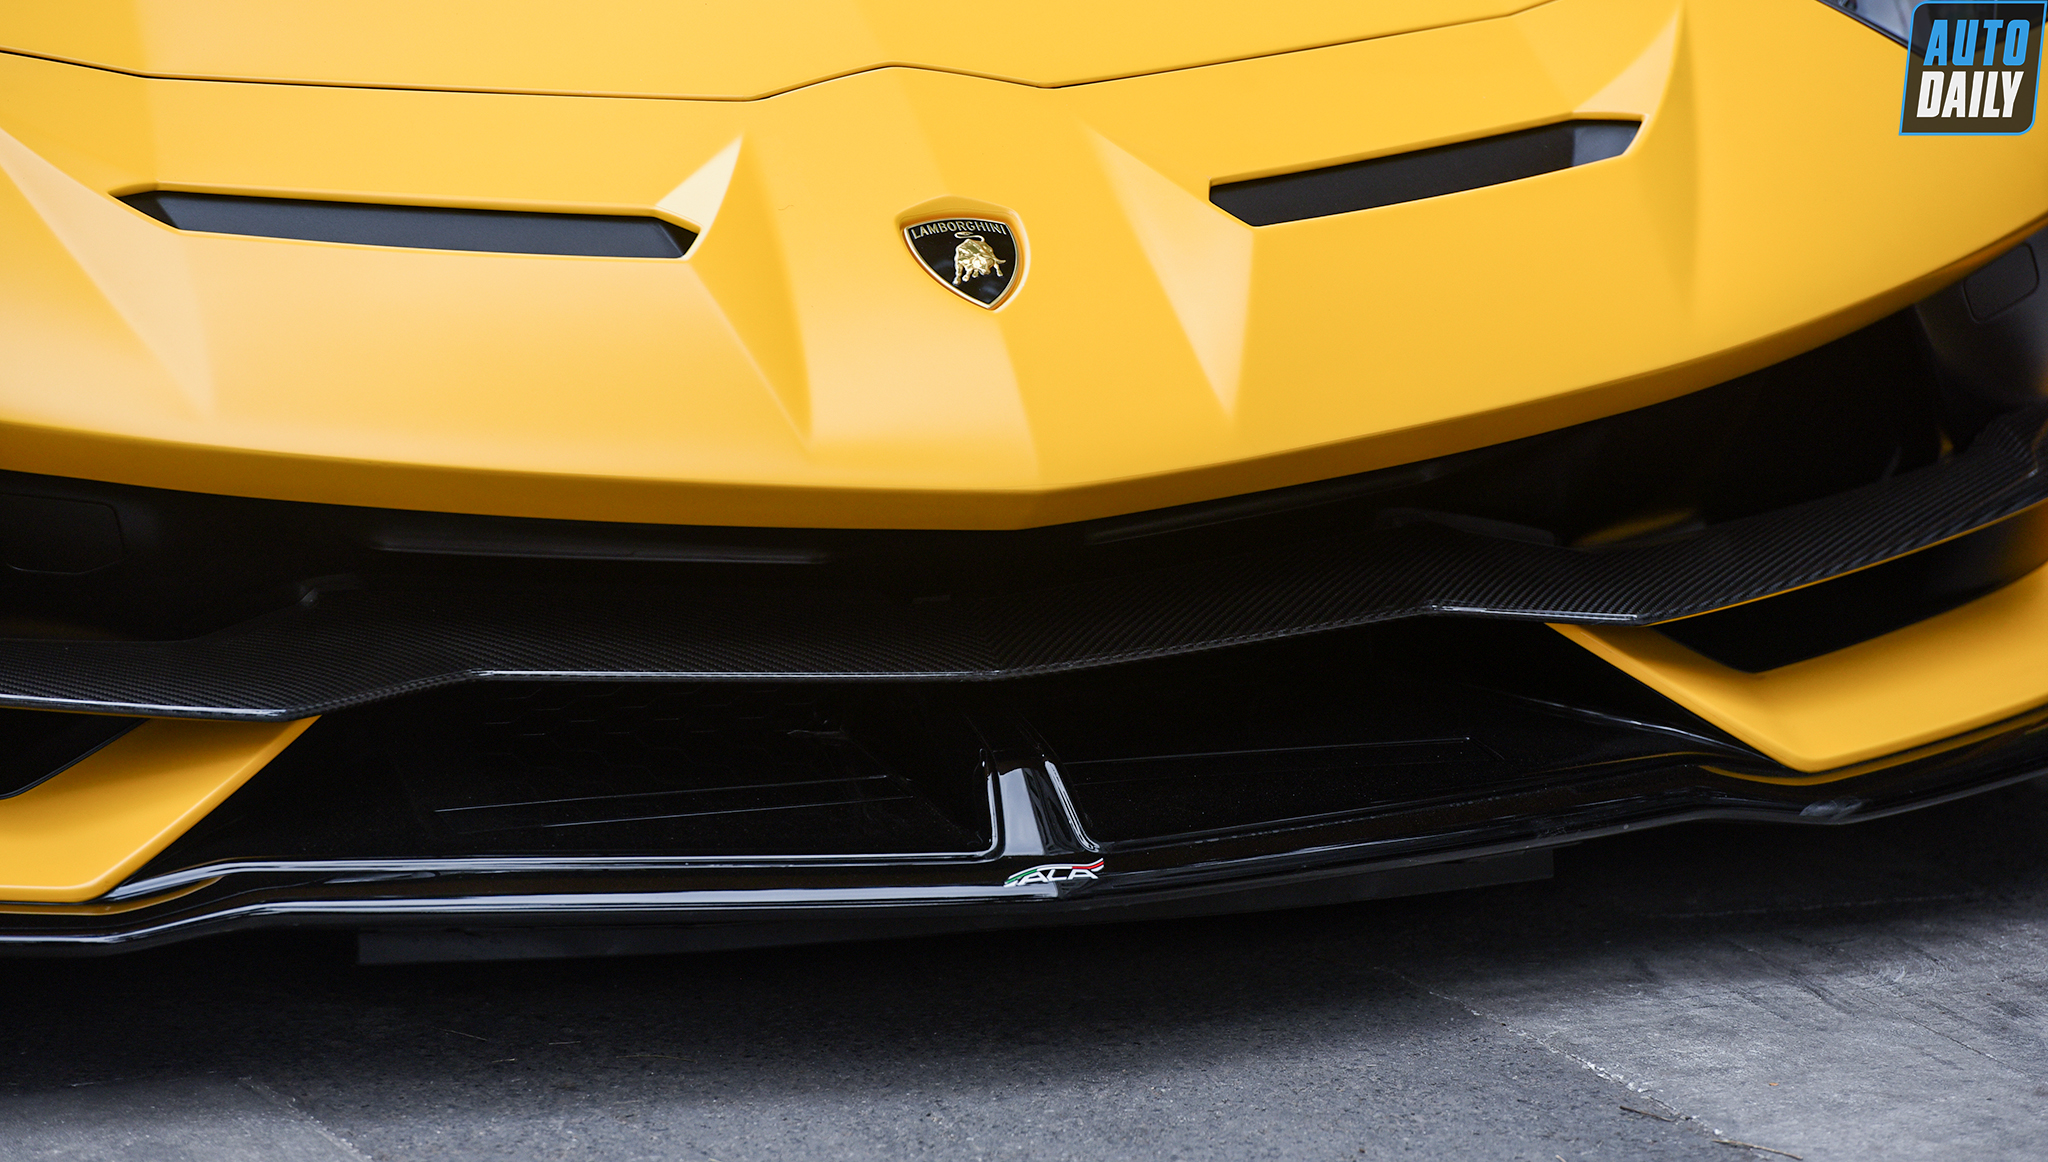 Chùm ảnh Lamborghini Aventador SVJ Roadster đầu tiên lăn bánh tại Việt Nam 24.jpg